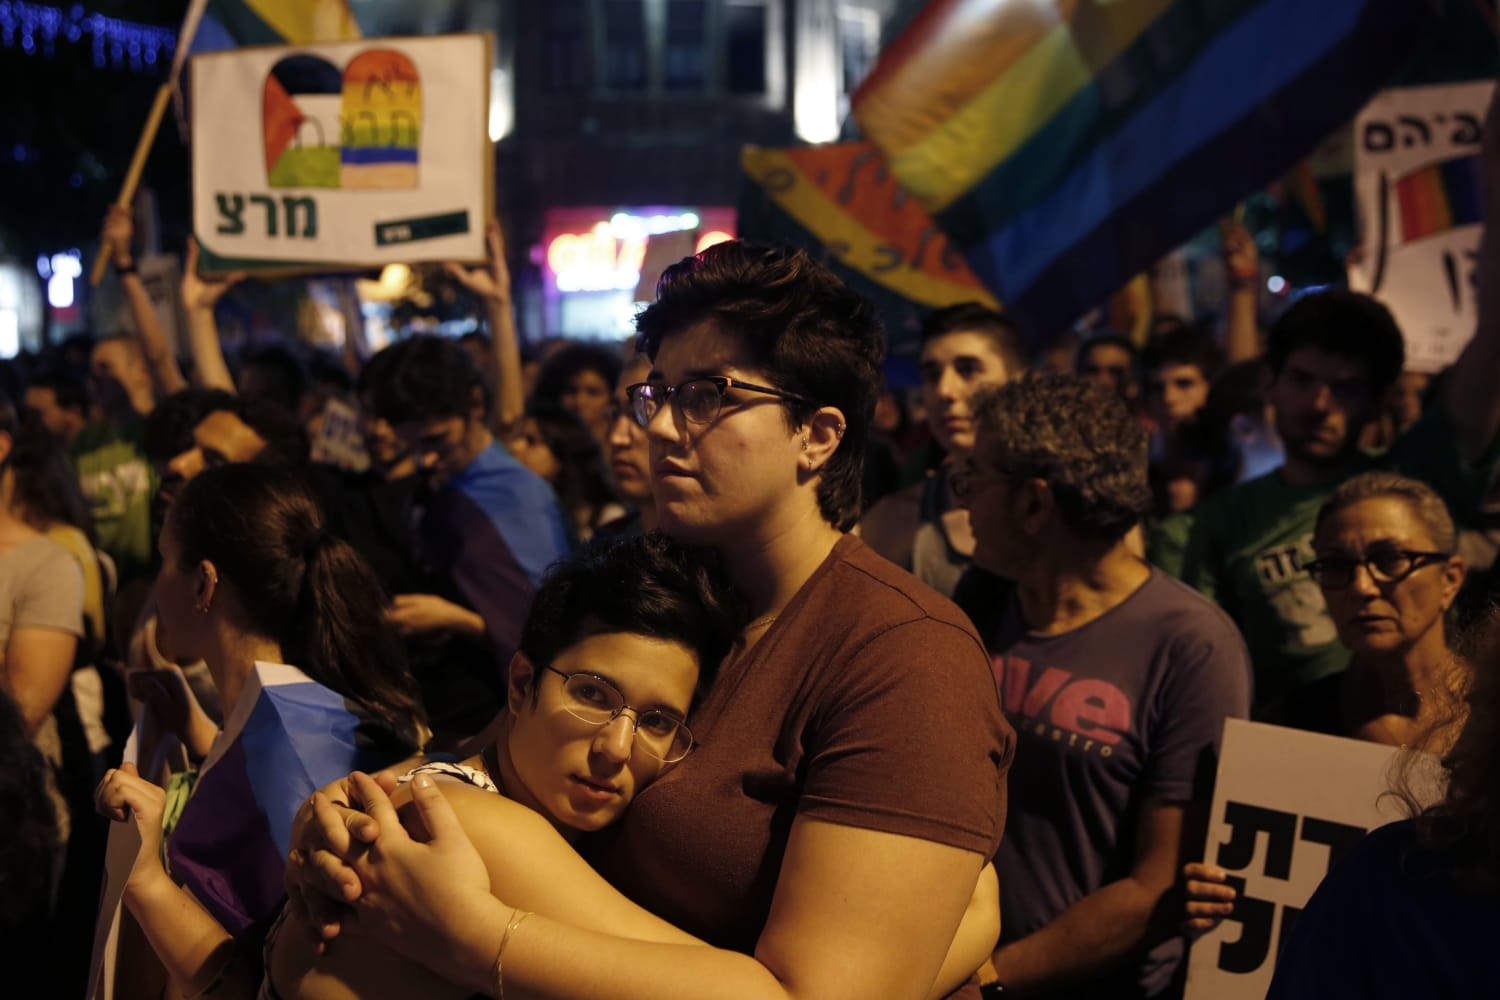 Jerusalem Gay Pride Stabber Found Fit For Remand